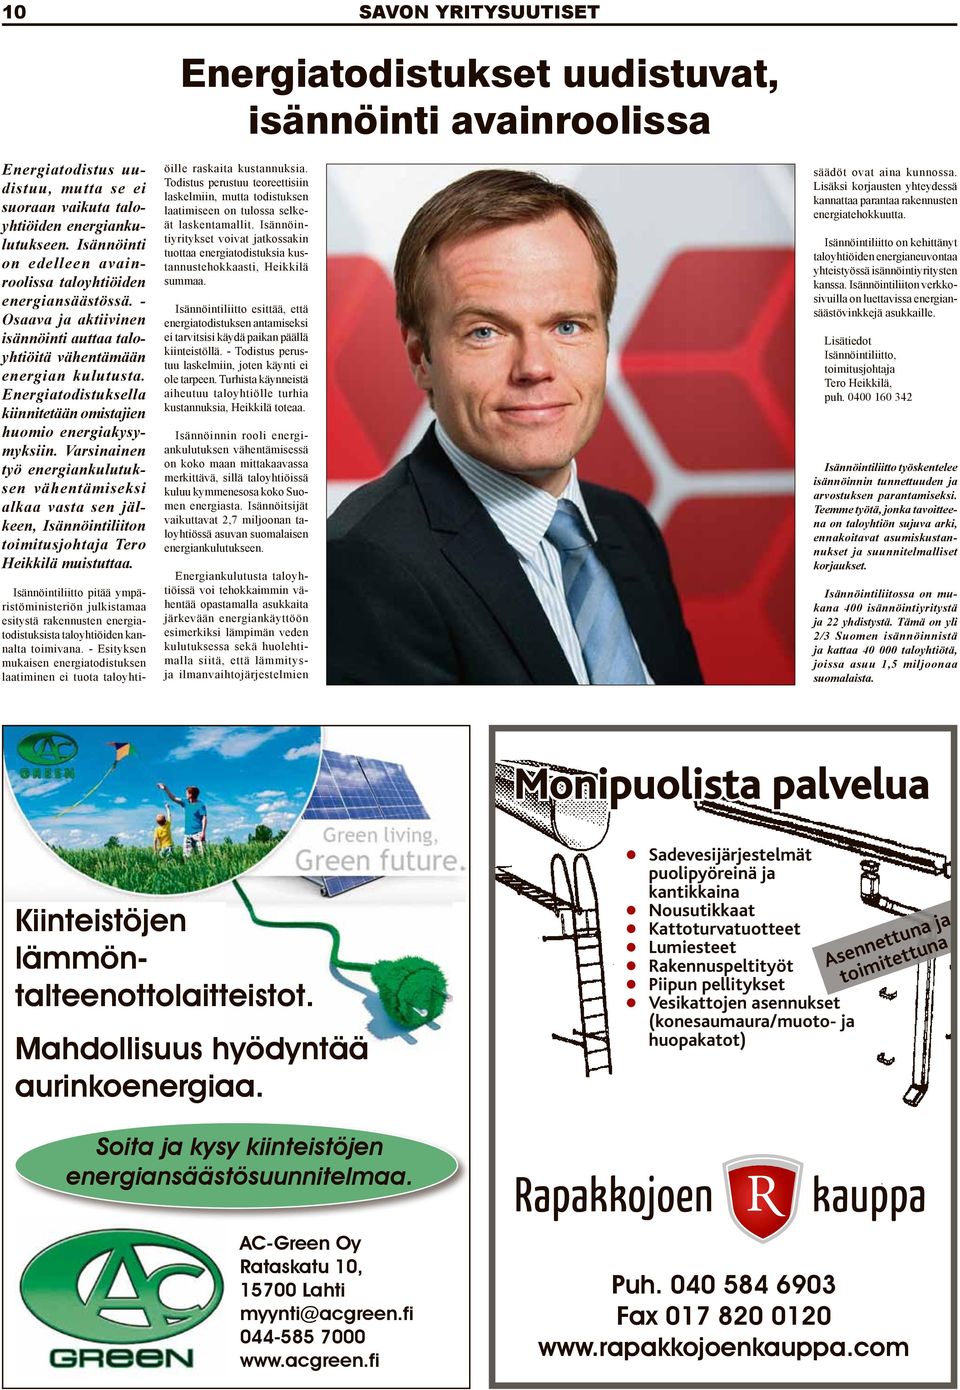 Varsinainen työ energiankulutuksen vähentämiseksi alkaa vasta sen jälkeen, Isännöintiliiton toimitusjohtaja Tero Heikkilä muistuttaa.